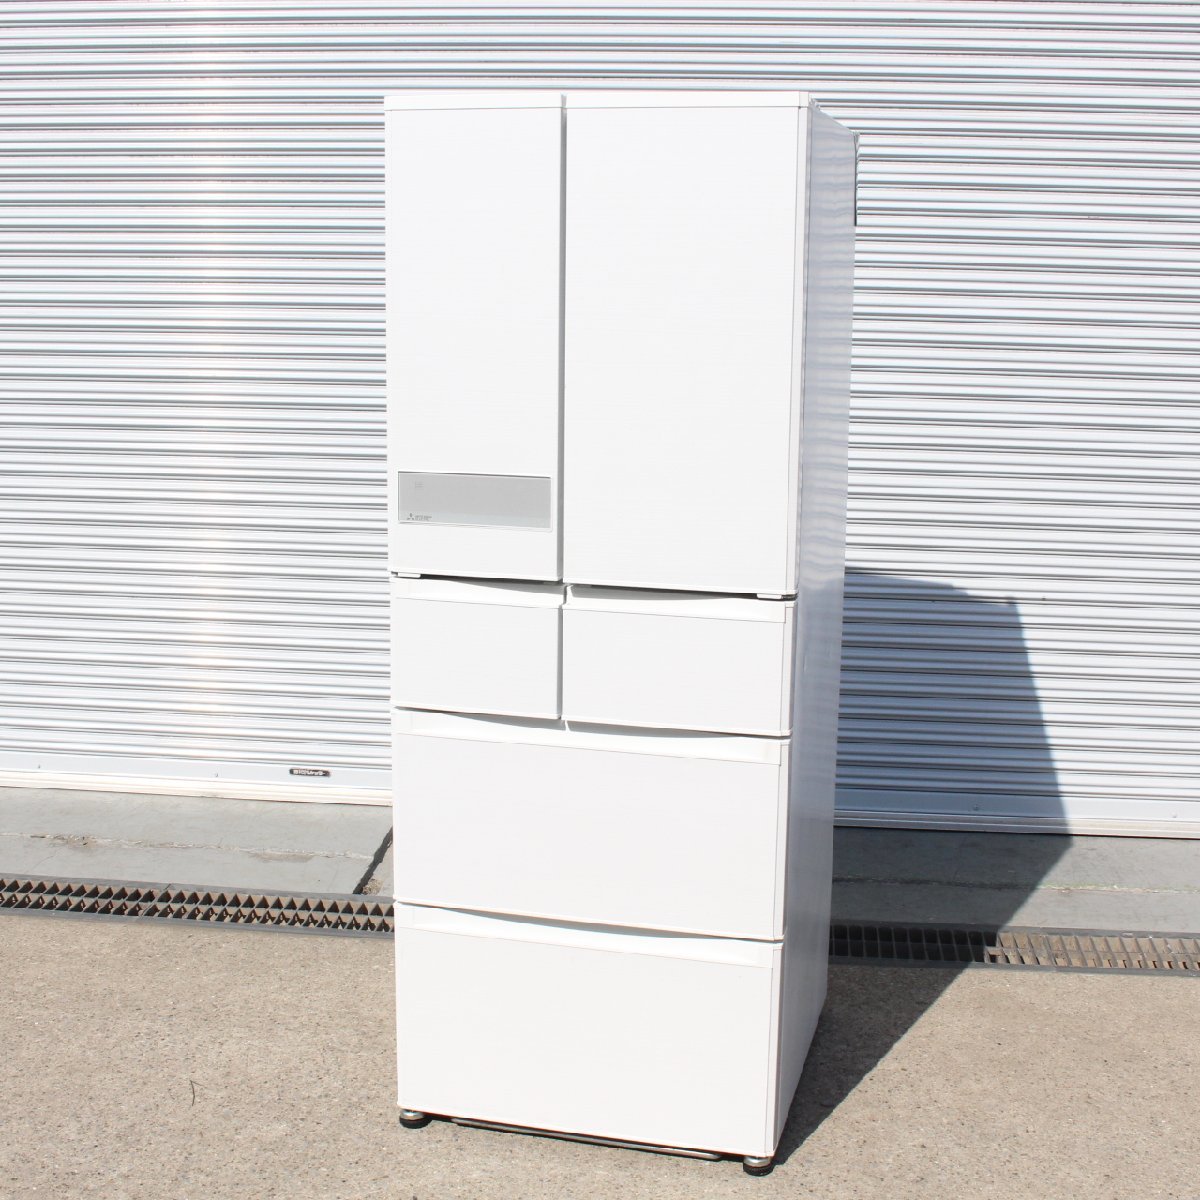 川崎市幸区にて 三菱 冷凍冷蔵庫 MR-JX48LY-W1 2015年製 を出張買取させて頂きました。